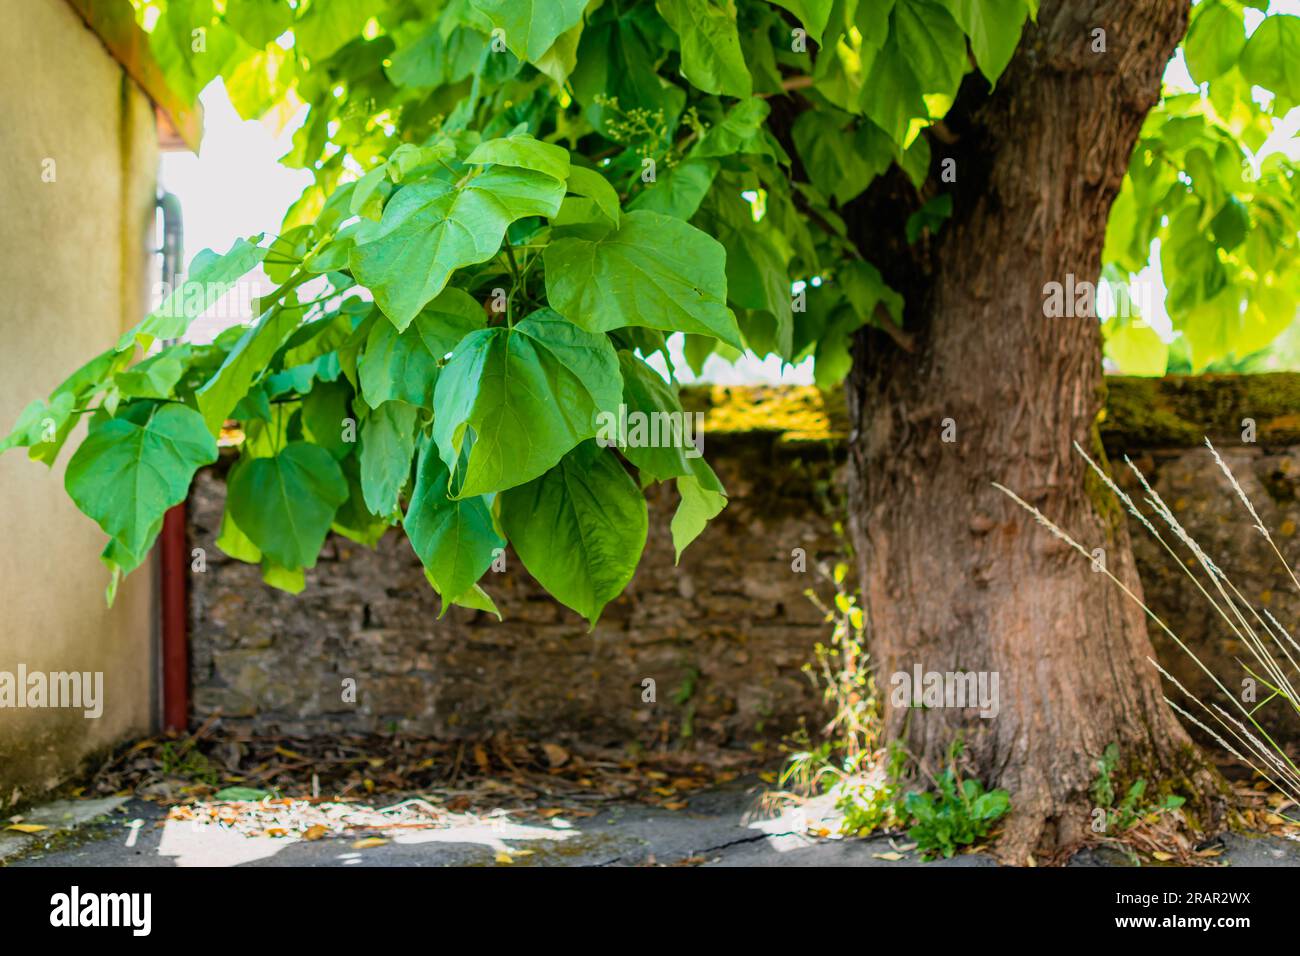 Catalpa tree with leaves, catalpa bignonioides, catalpa speciosa or cigar tree Stock Photo